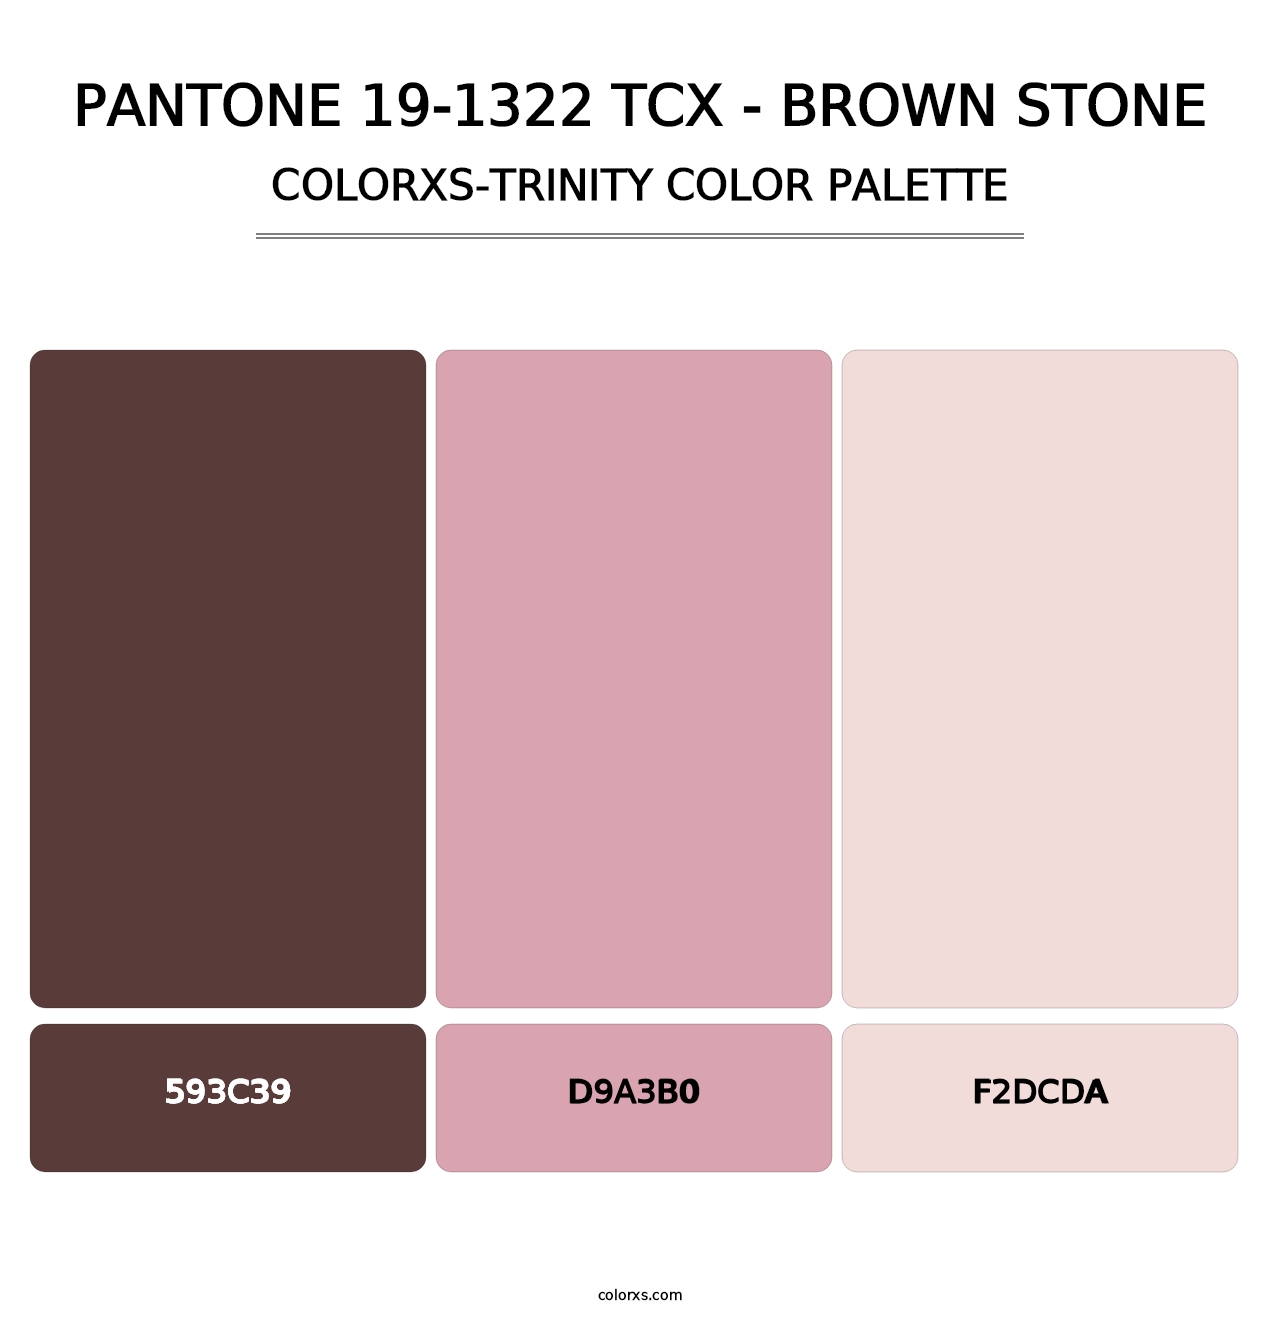 PANTONE 19-1322 TCX - Brown Stone - Colorxs Trinity Palette